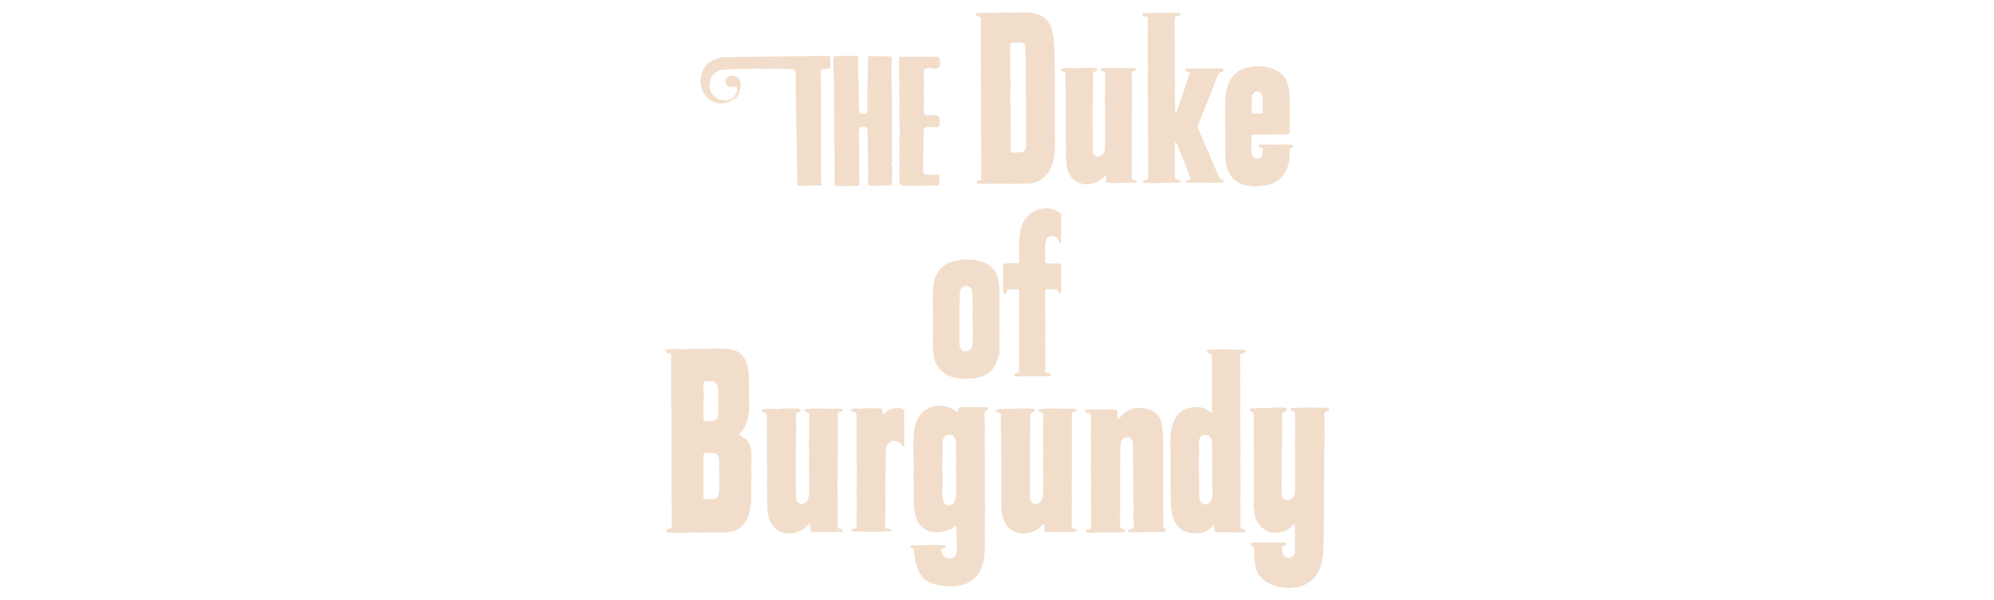 Duke of Burgundy, The